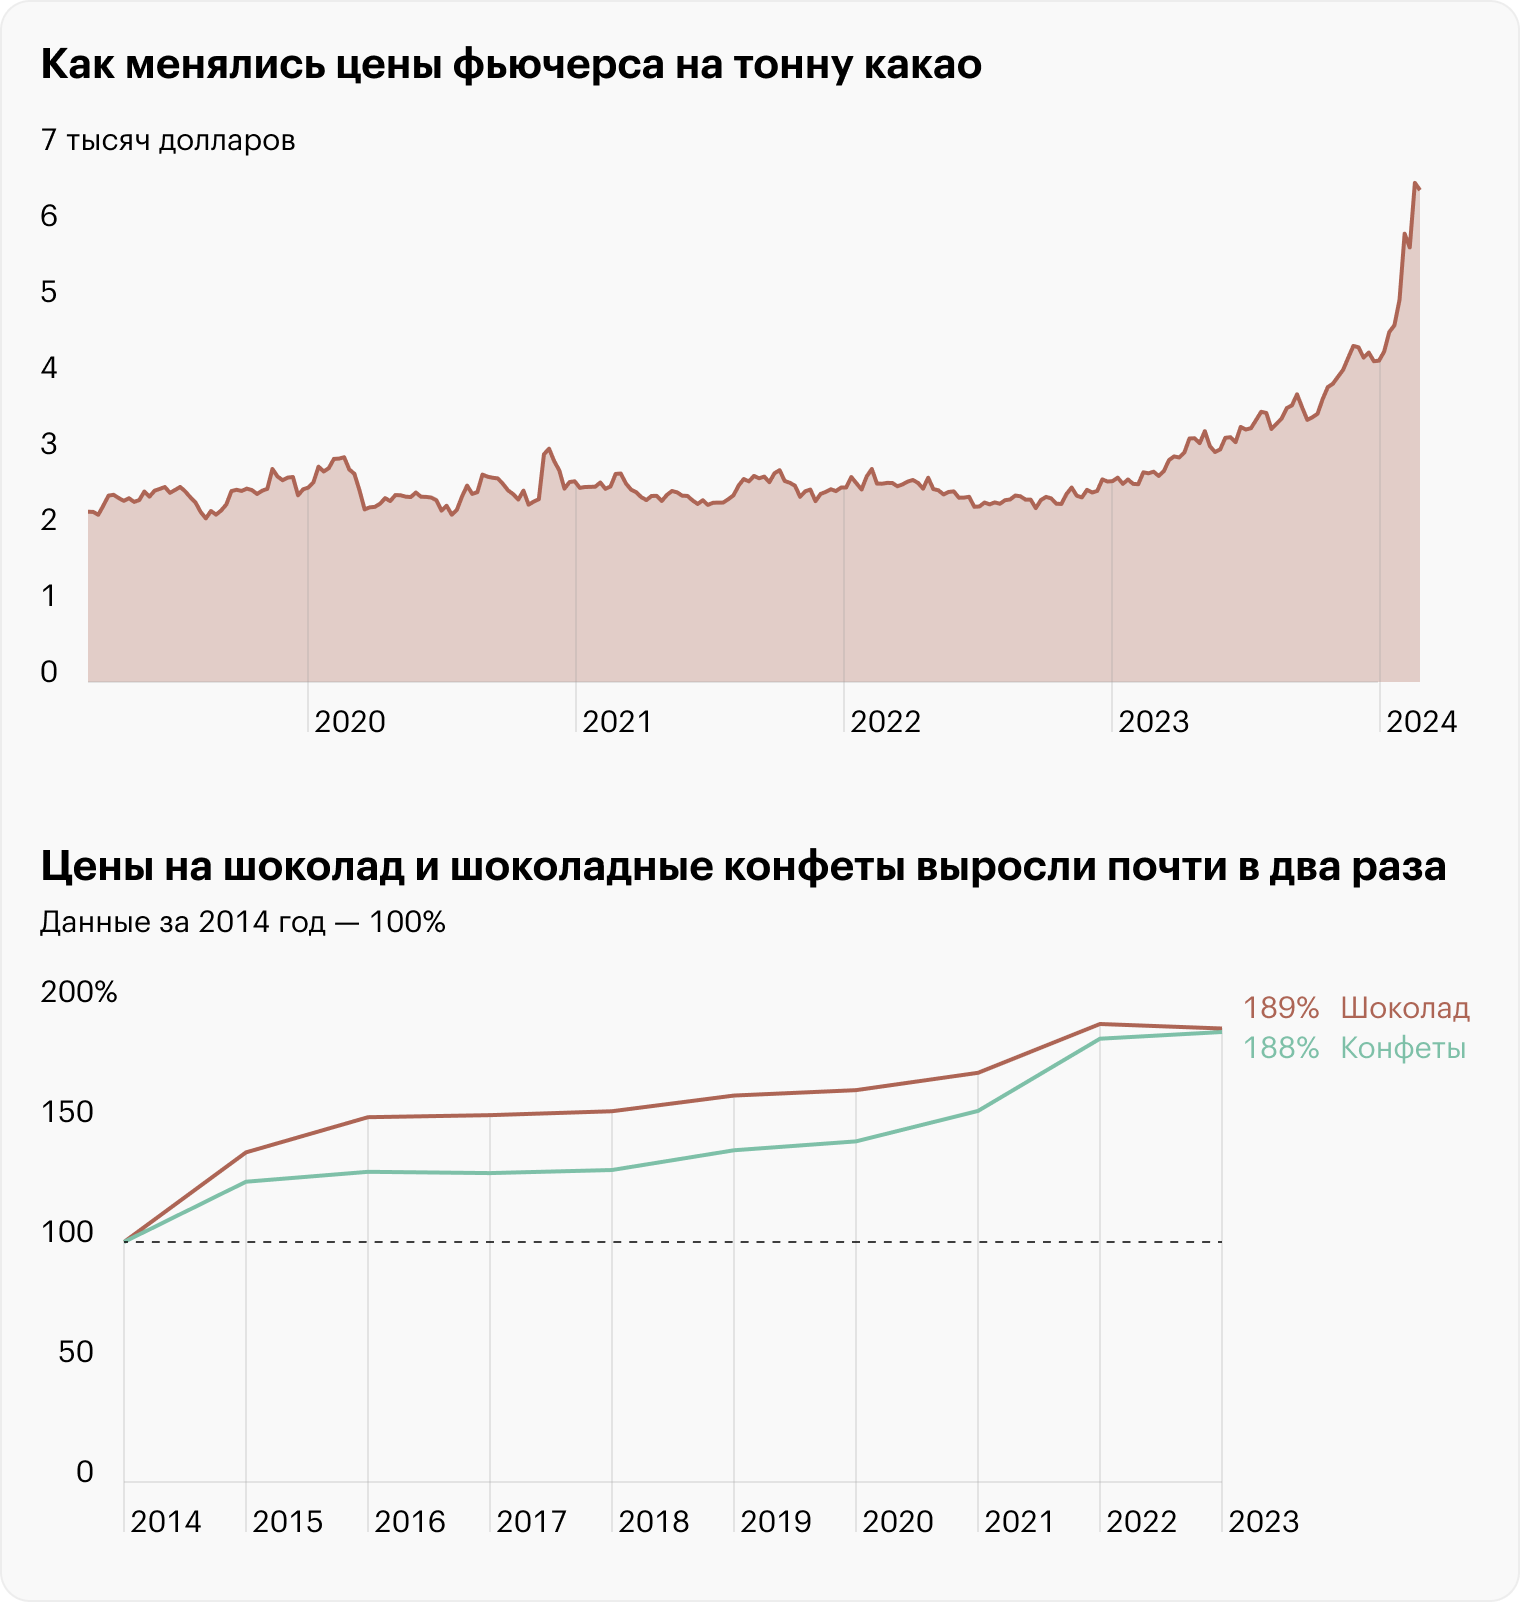 Источники: ru.tradingeconomics.com, ЕМИСС